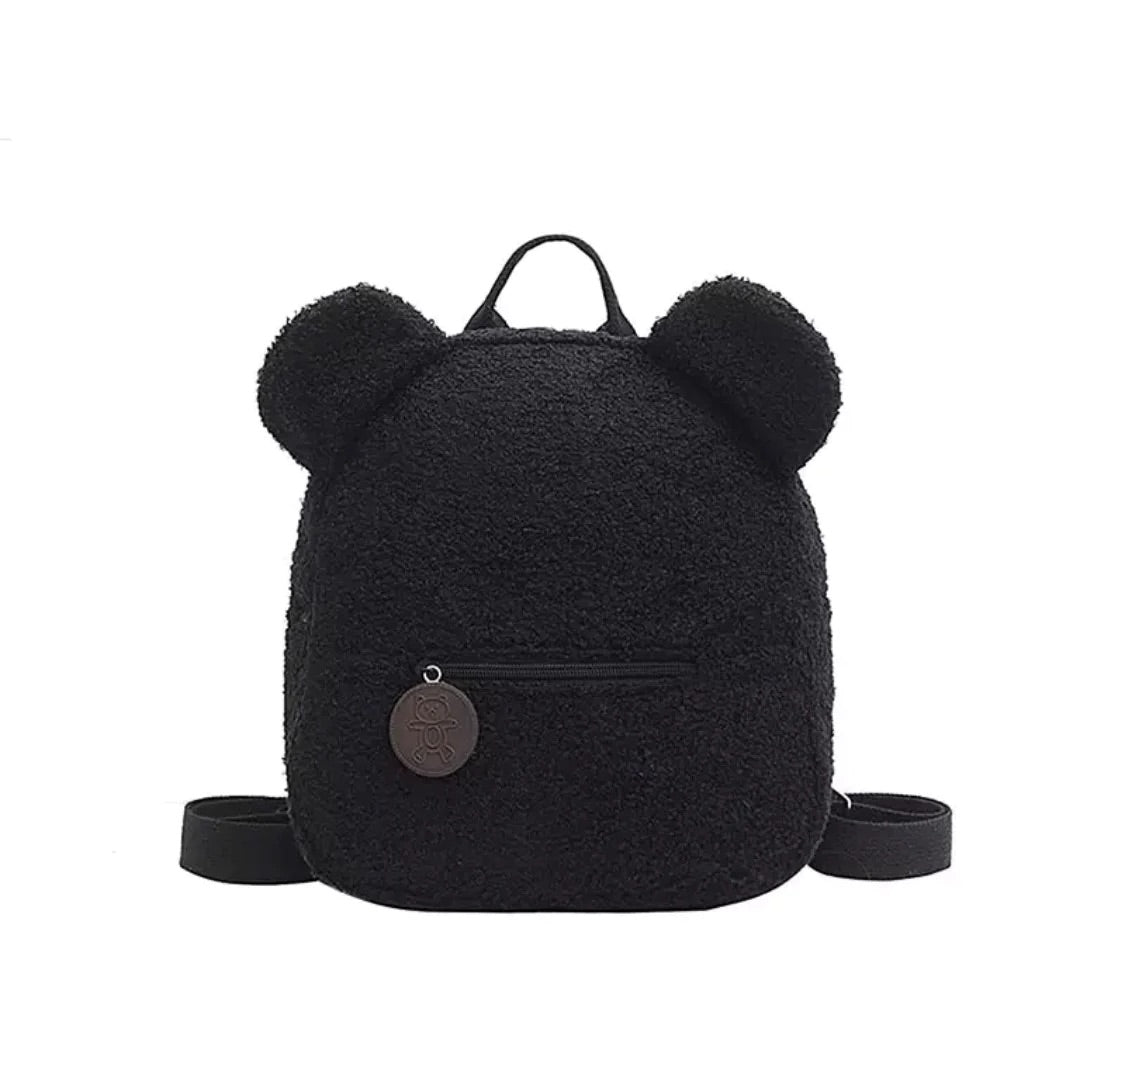 Teddy bear ears bags